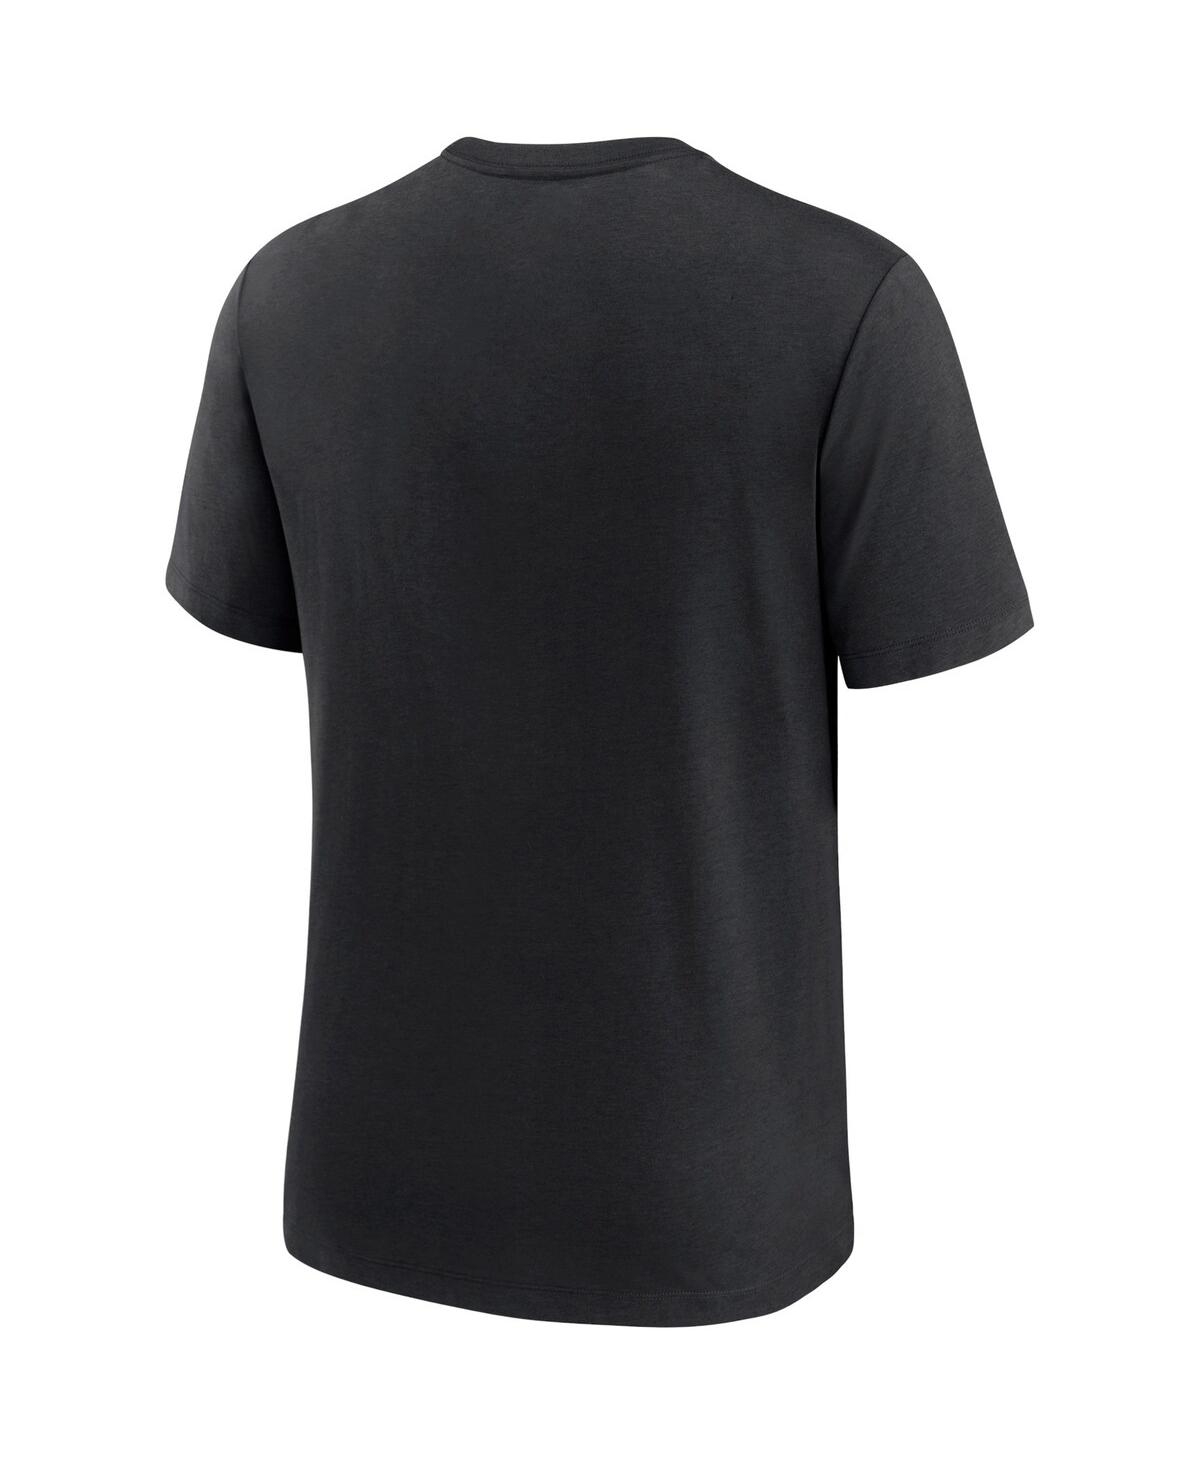 Shop Nike Men's  Black Cincinnati Reds Authentic Collection Tri-blend Performance T-shirt